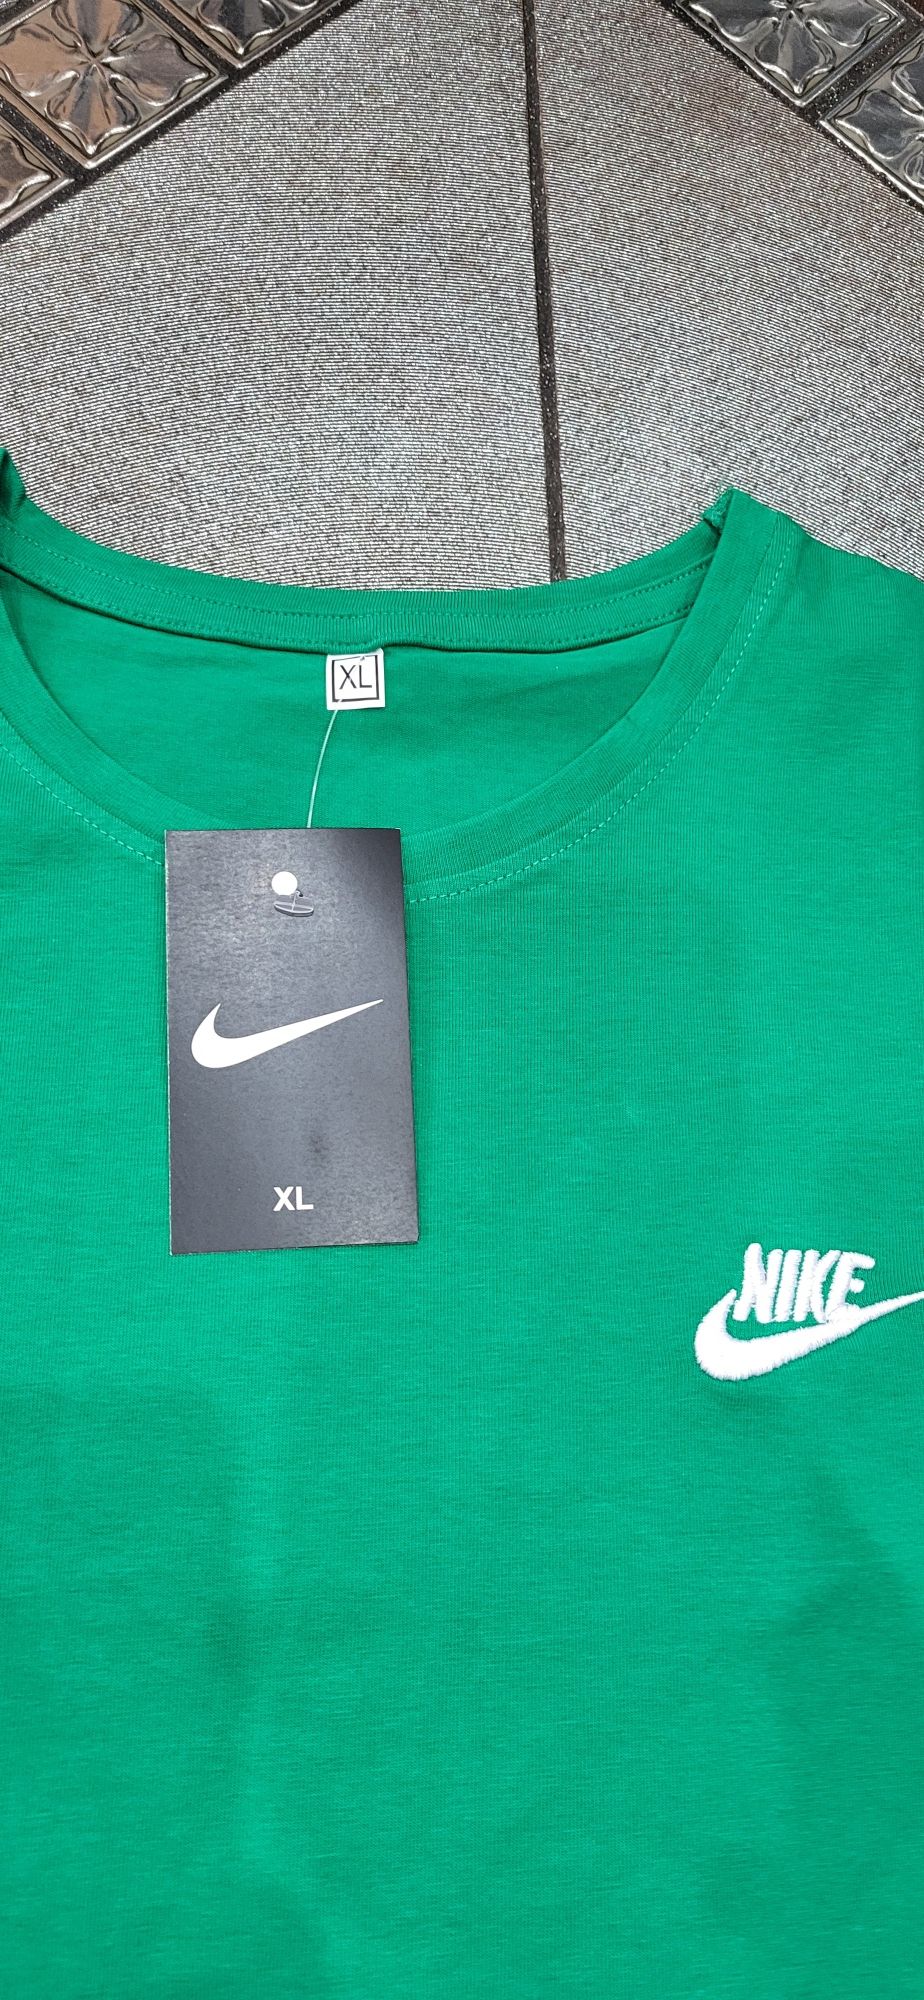 Zielona koszulka męska bawełna łyżwa logo nike XL